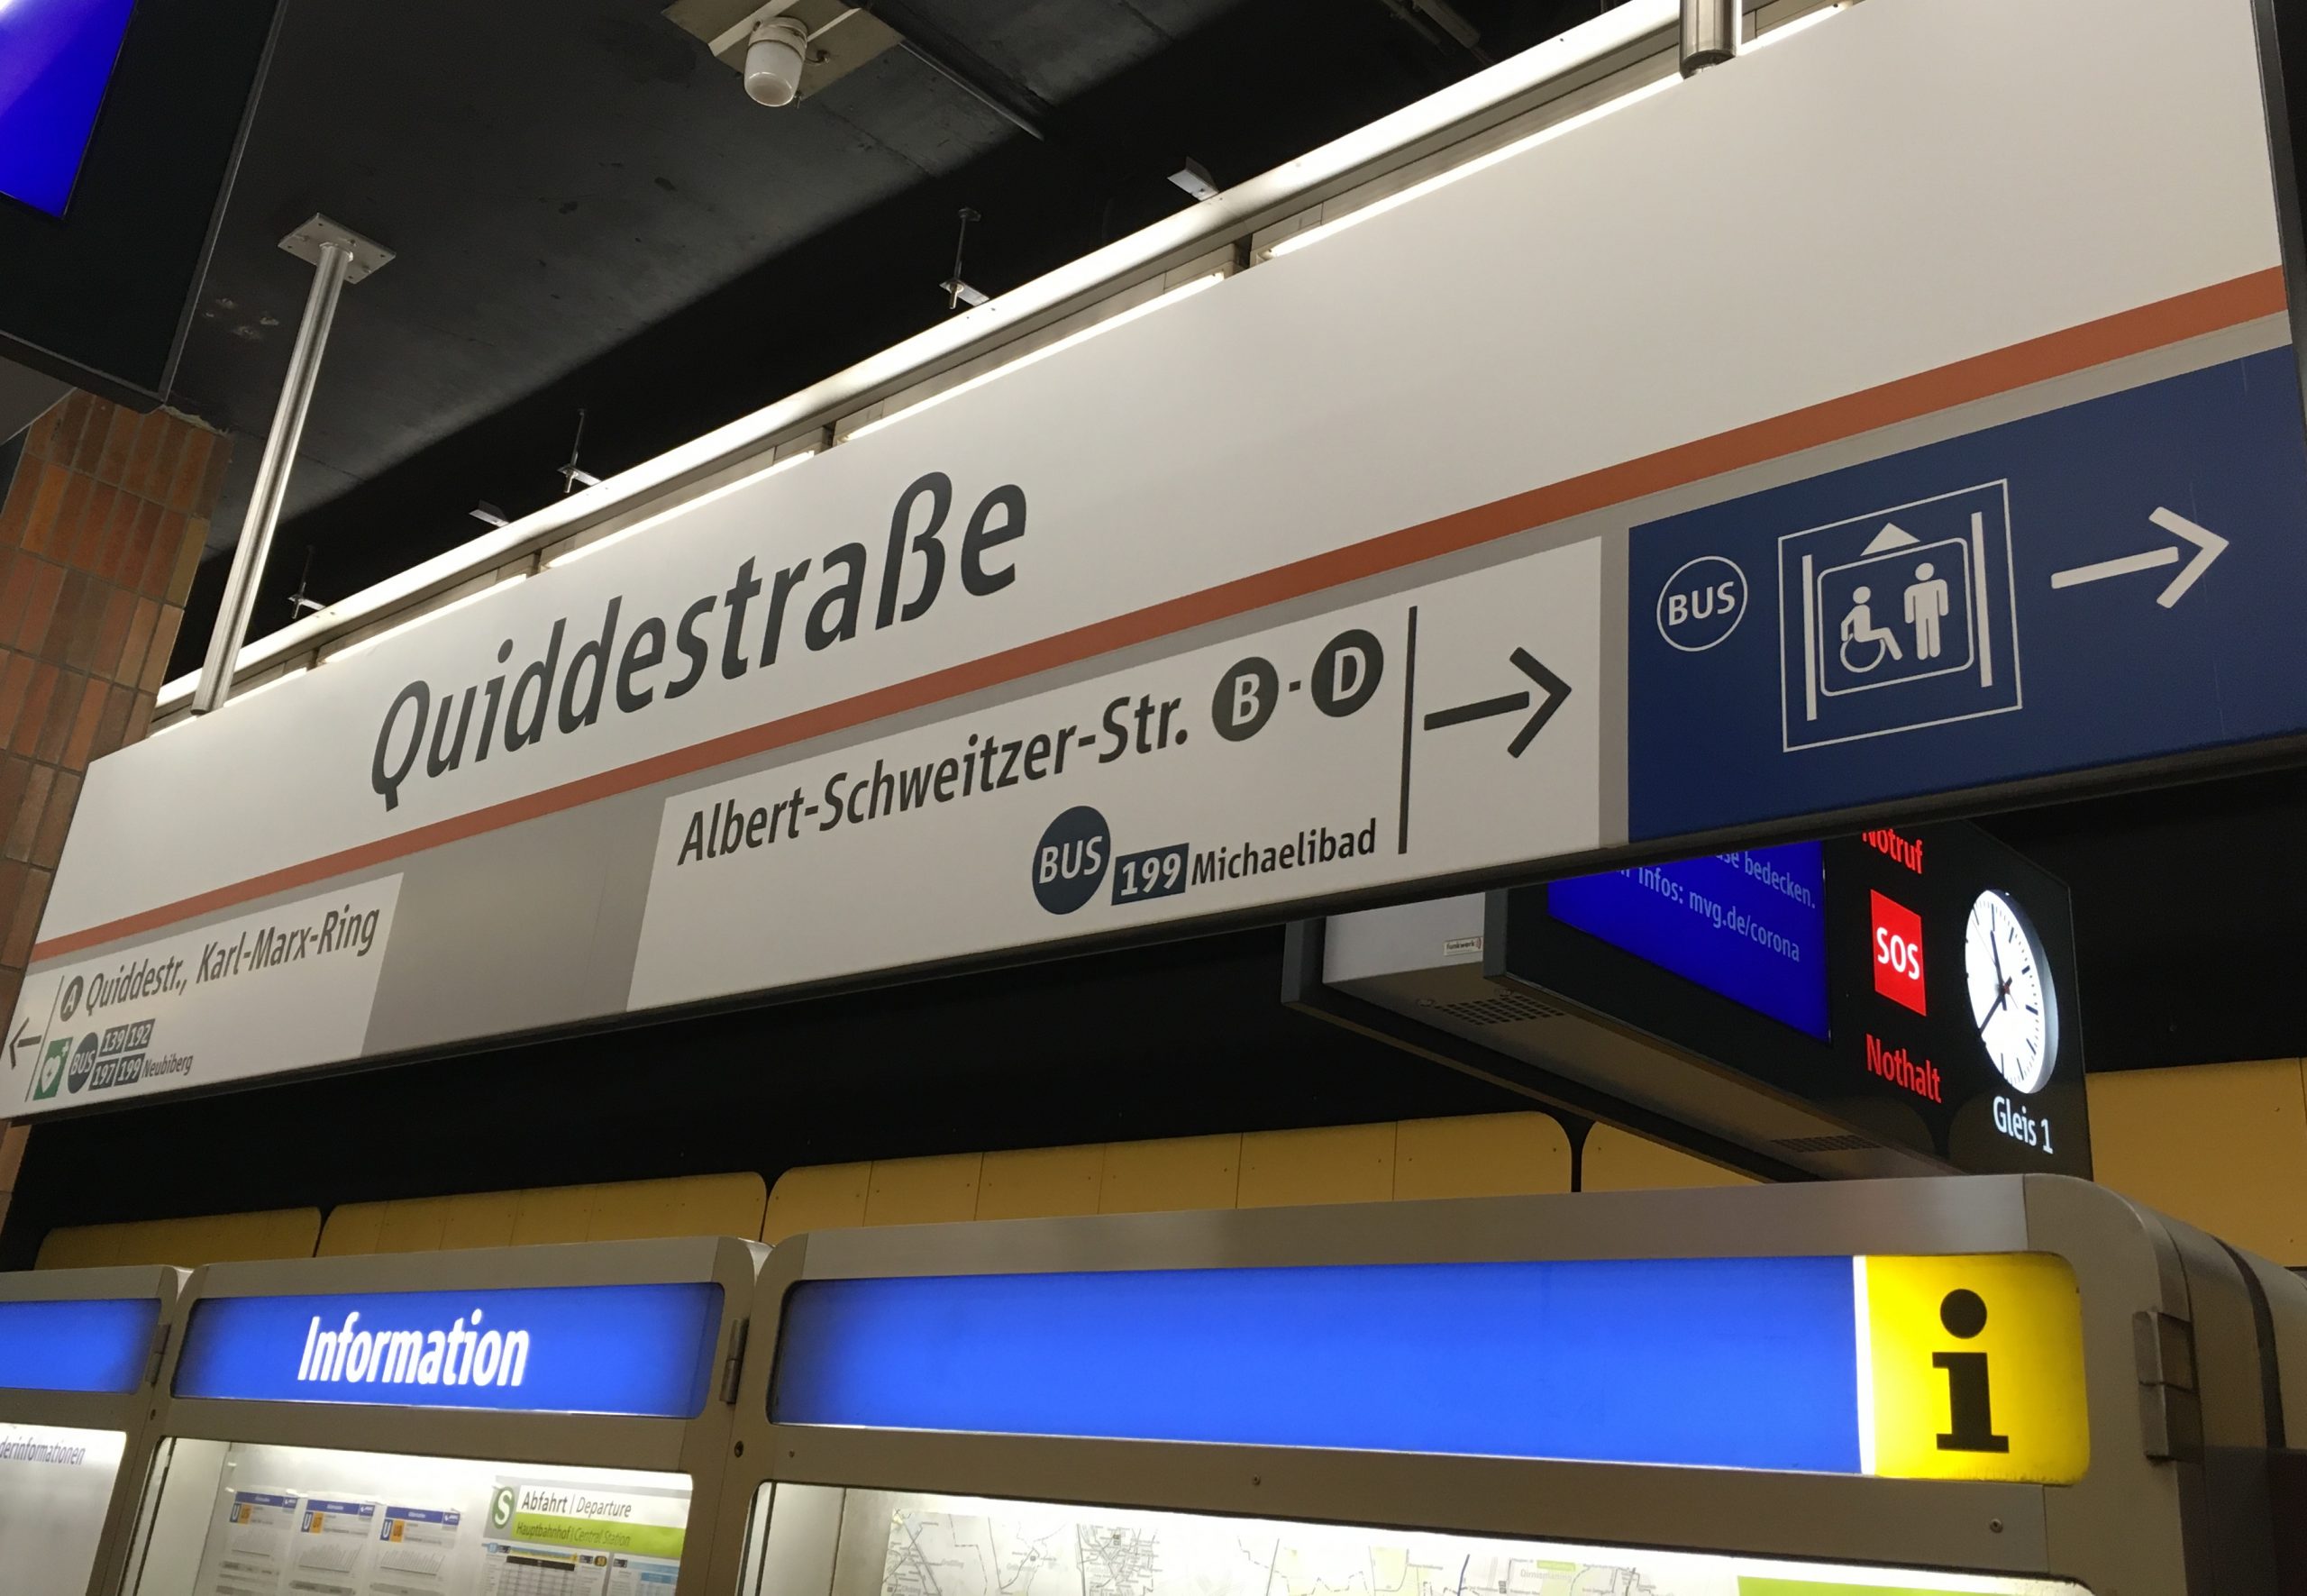 Hinweisschild in der U-Bahn-Station Quiddestraße mit großem Aufzug-Piktogramm und Bus-Symbol